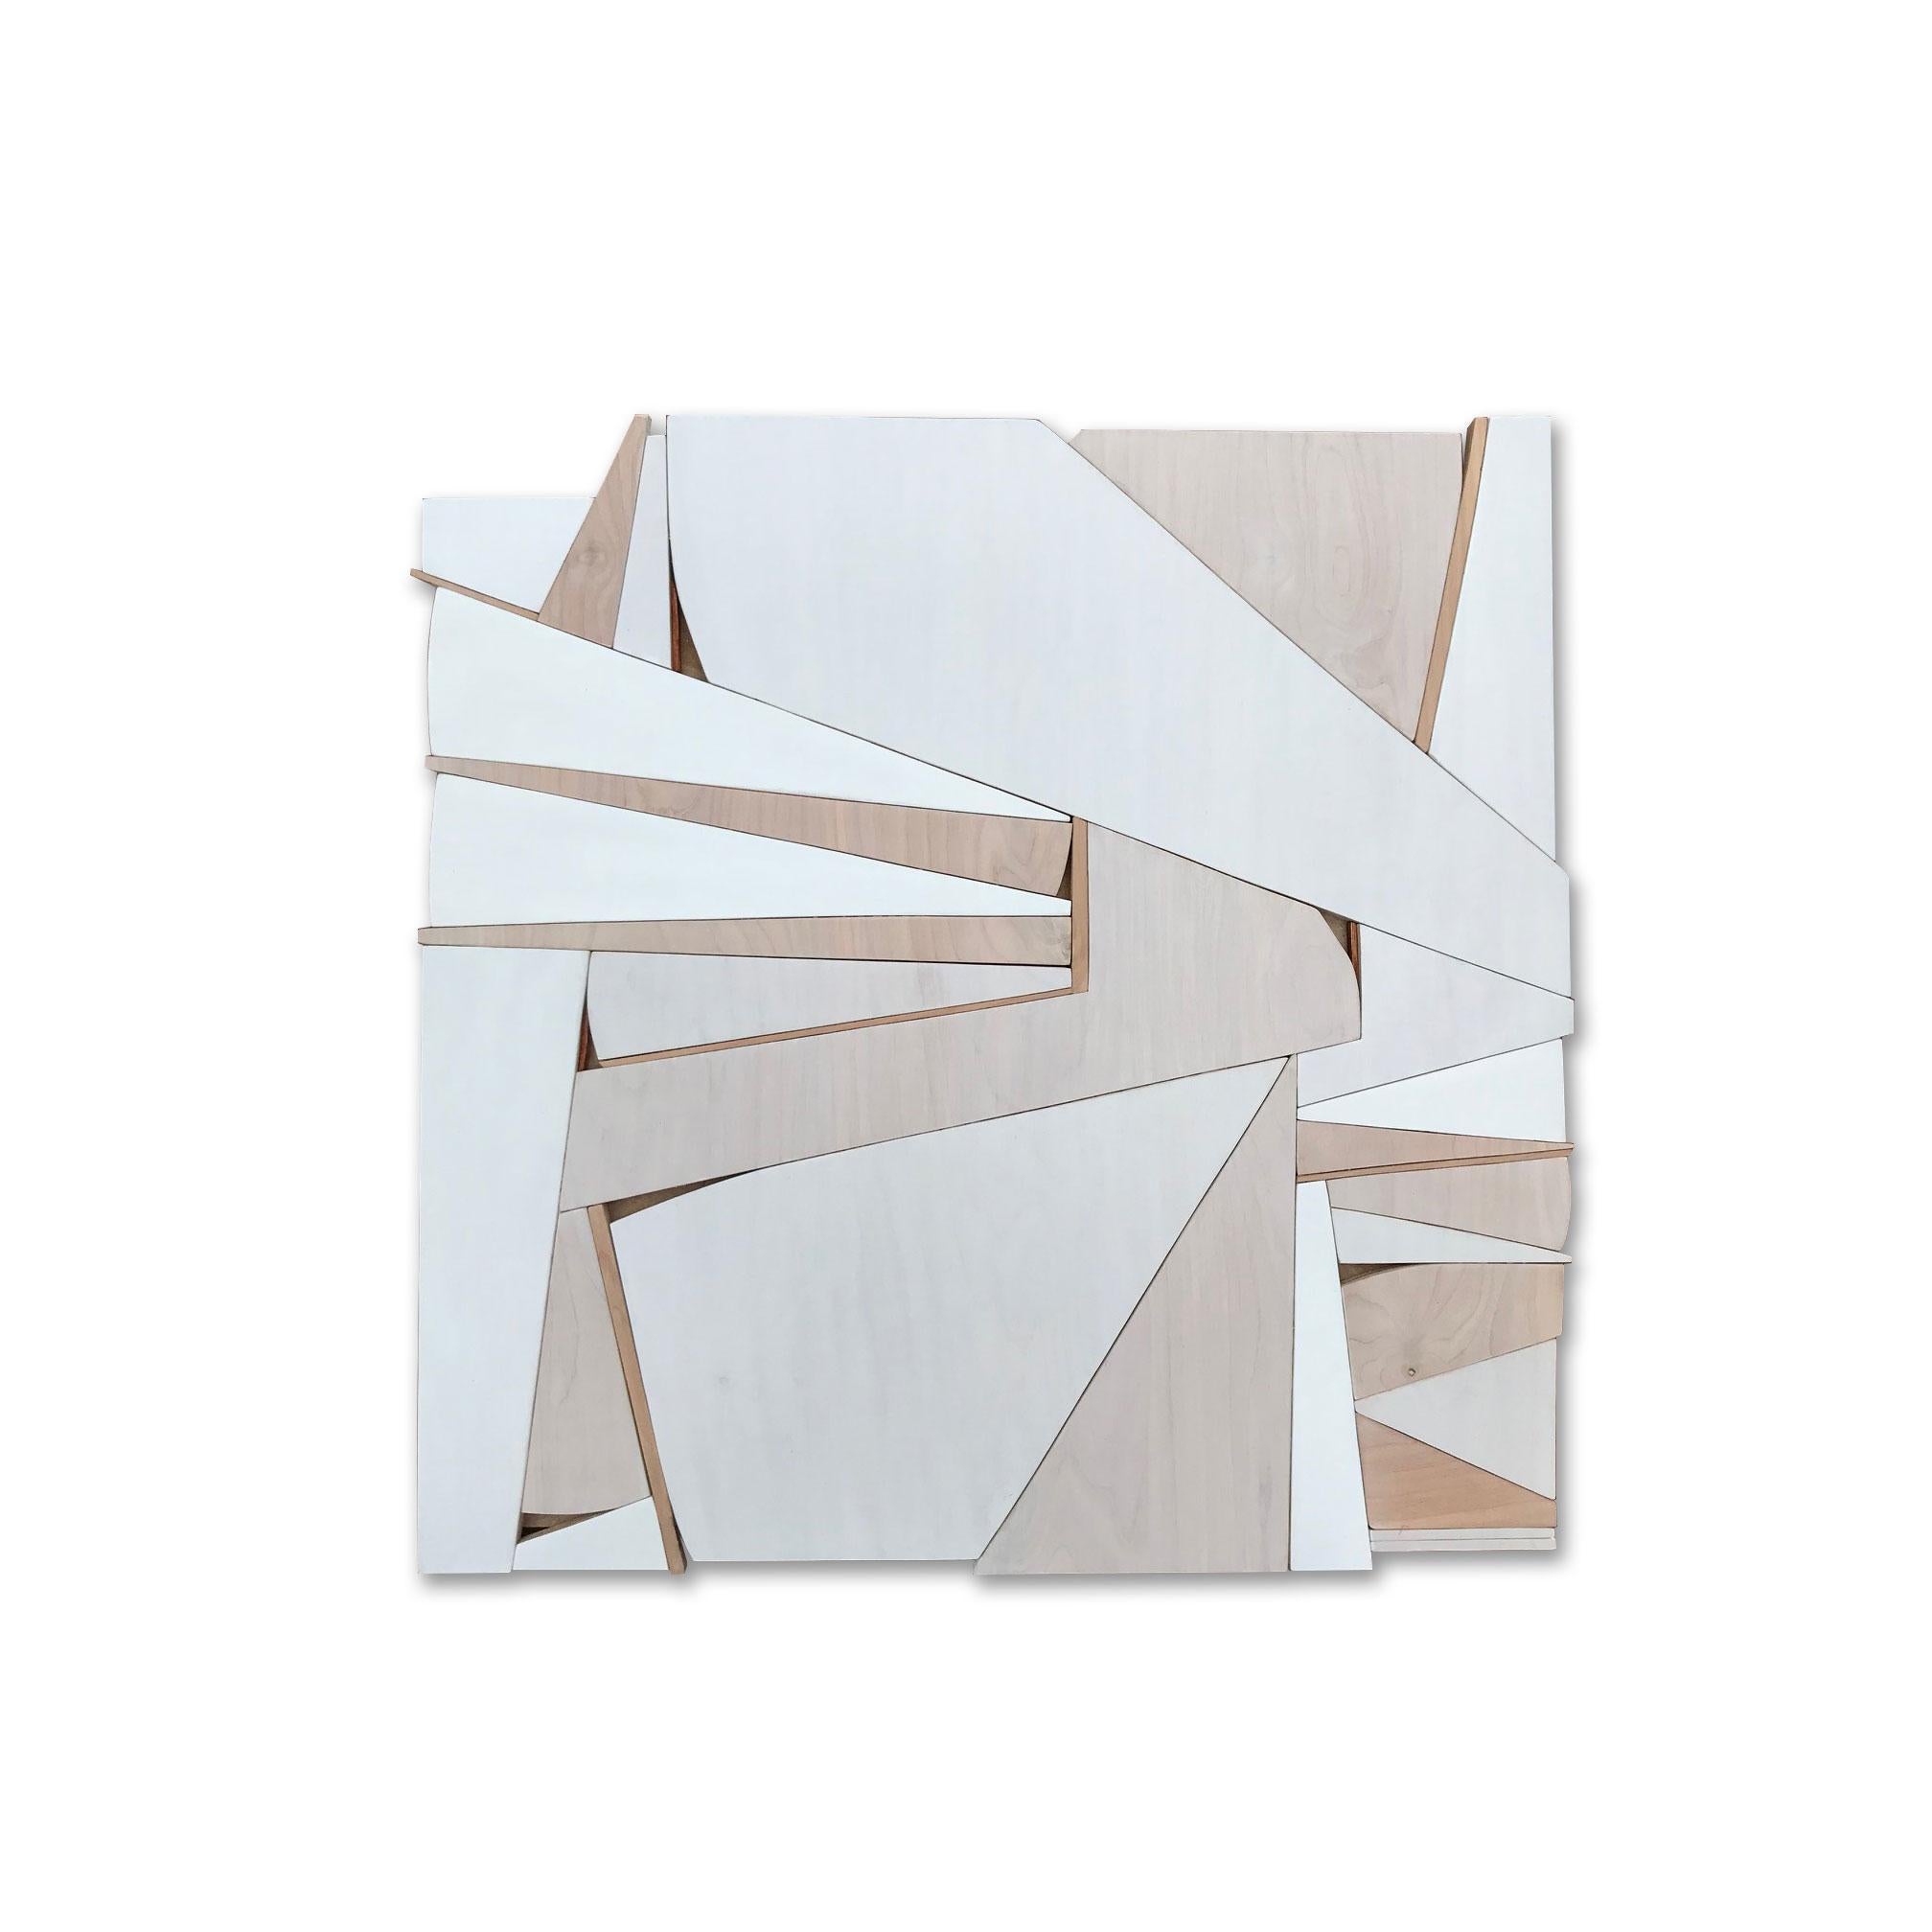 Zigzag II (modern abstract wall sculpture minimal geometric design neutrals wood